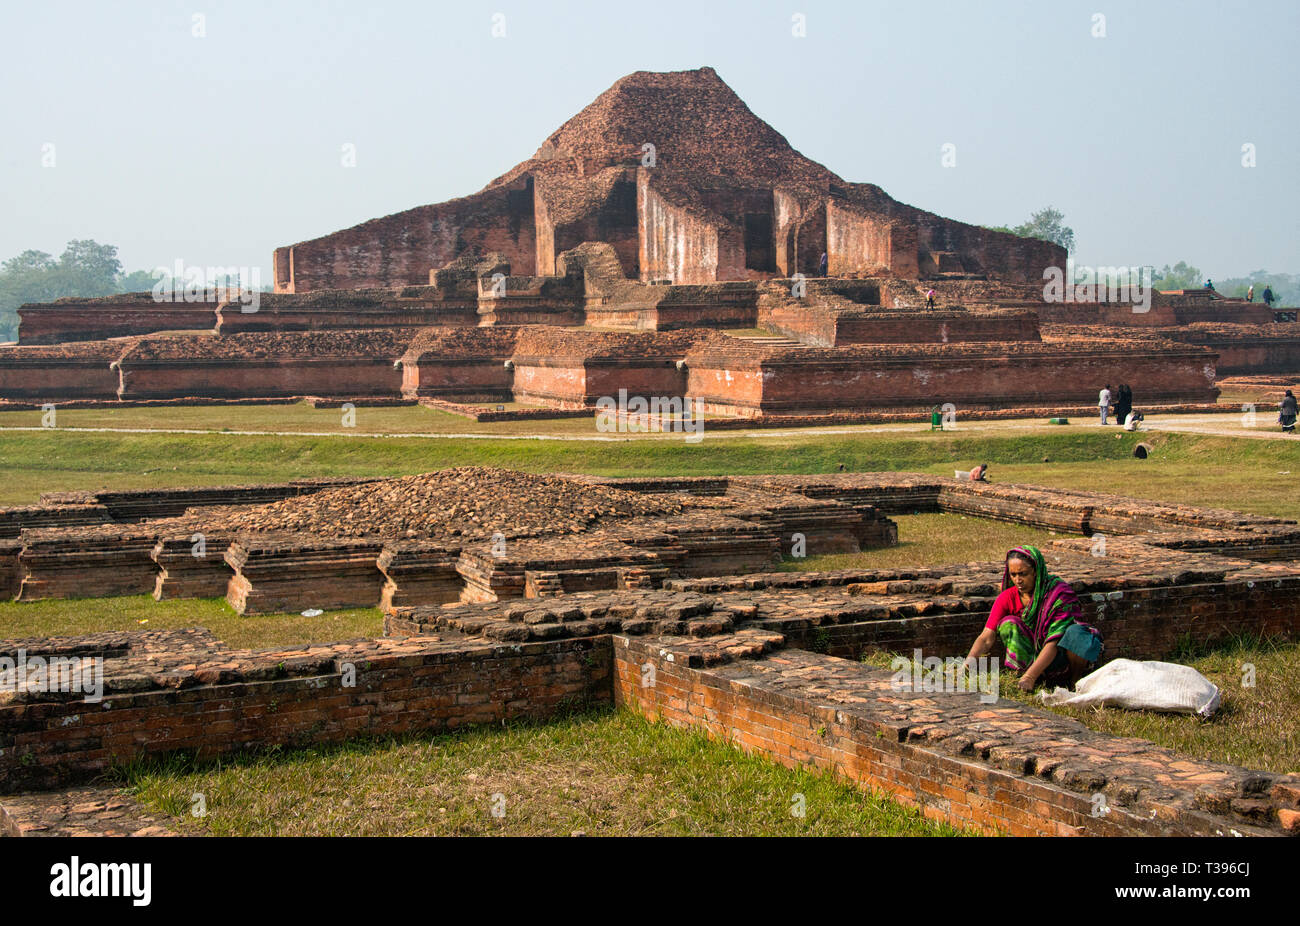 Somapura Mahavihara (paharpur Buddhistischen Bihar), UNESCO-Weltkulturerbe, Paharpur, naogaon Bezirk, Rajshahi Division, Bangladesch Stockfoto